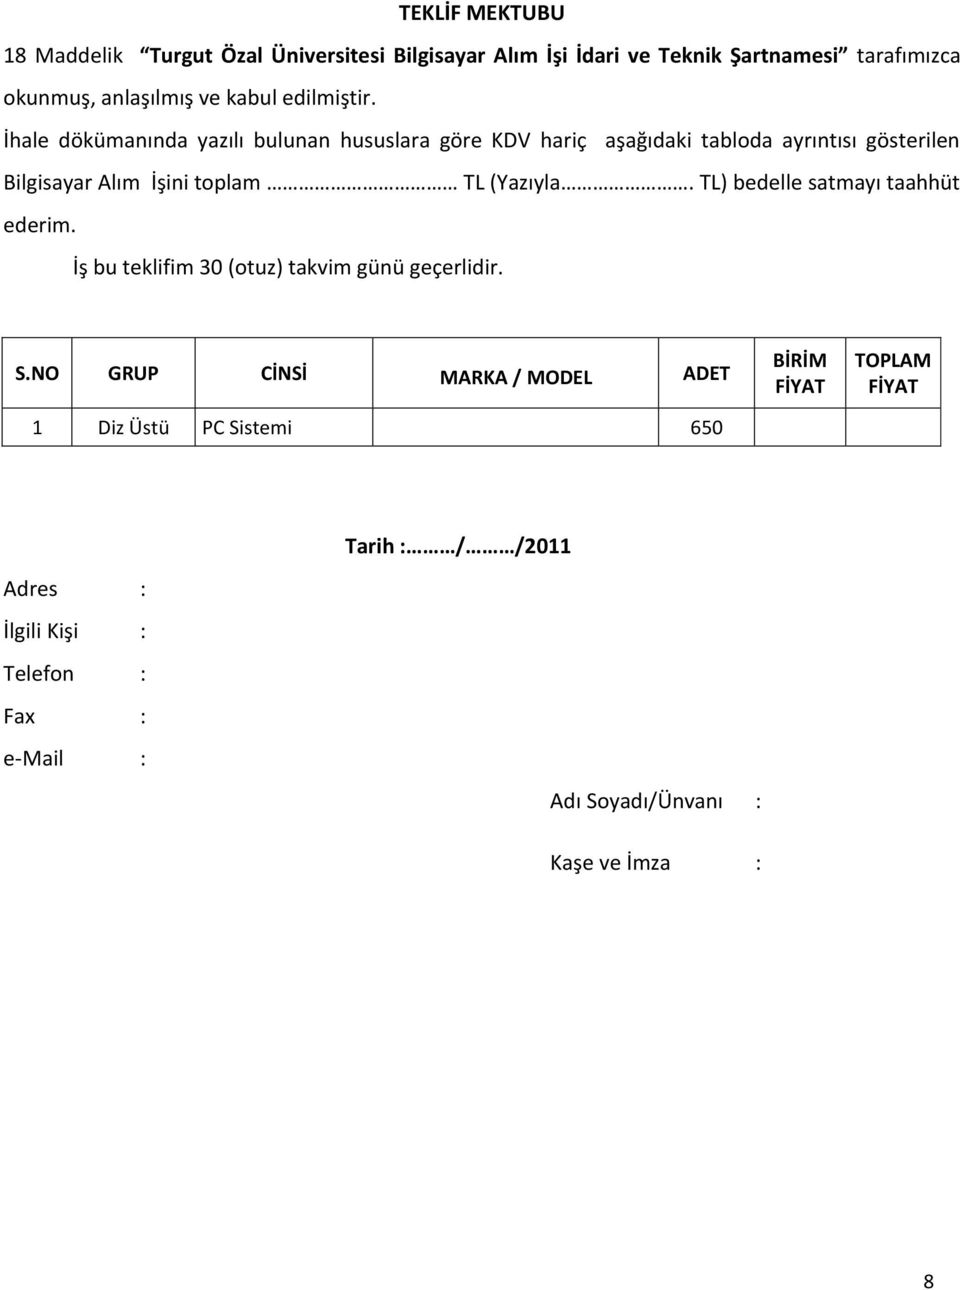 İhale dökümanında yazılı bulunan hususlara göre KDV hariç aşağıdaki tabloda ayrıntısı gösterilen Bilgisayar Alım İşini toplam TL (Yazıyla.